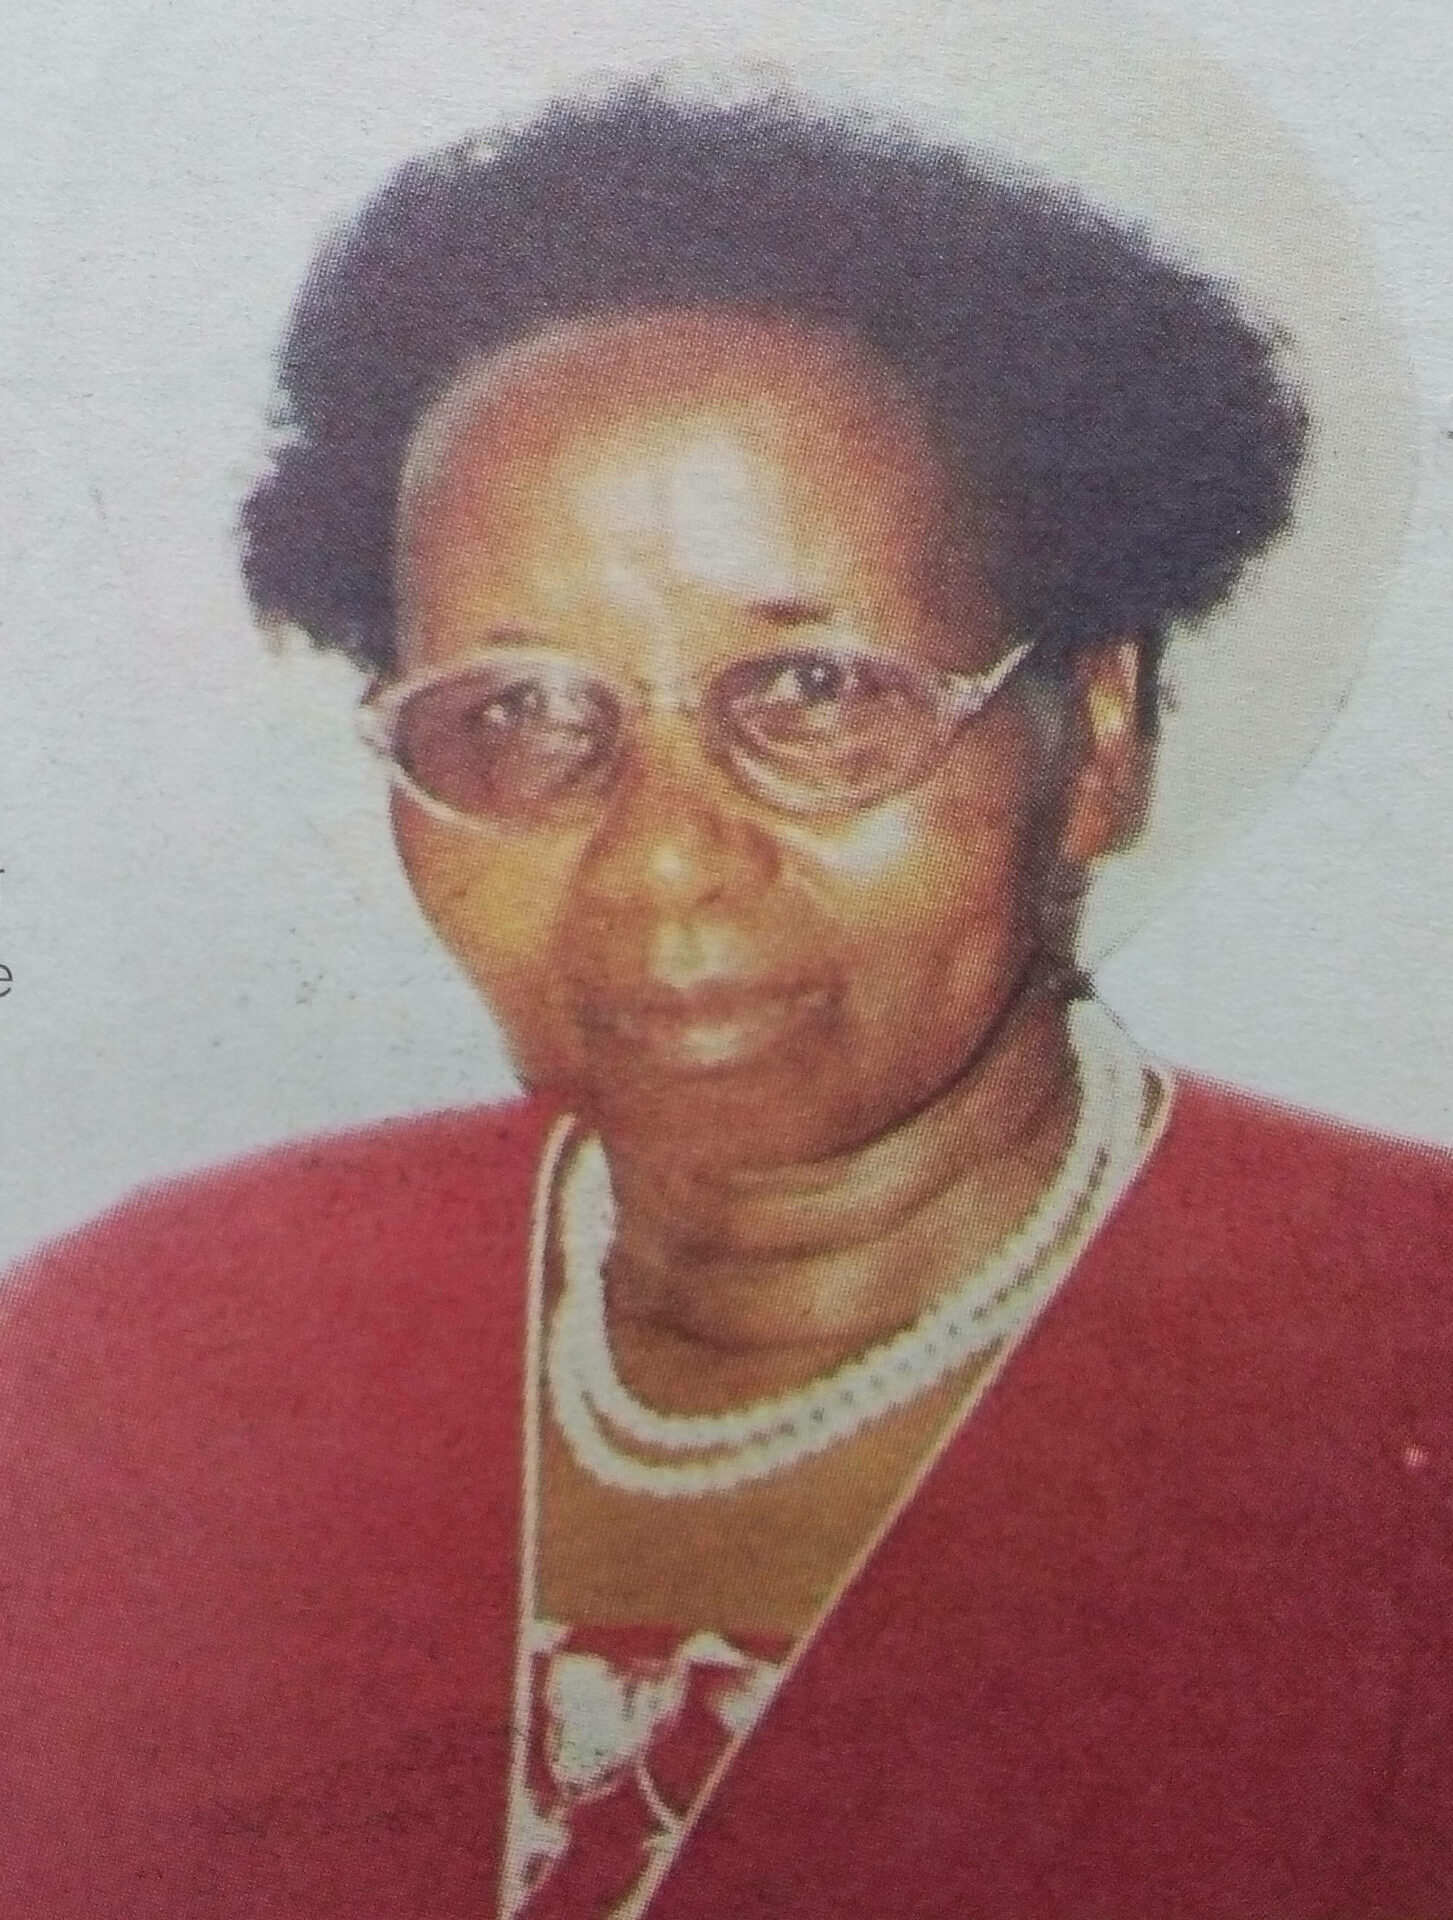 Obituary Image of Mrs. Wairimu Nyoike April 22, 1936 — April 20, 2017